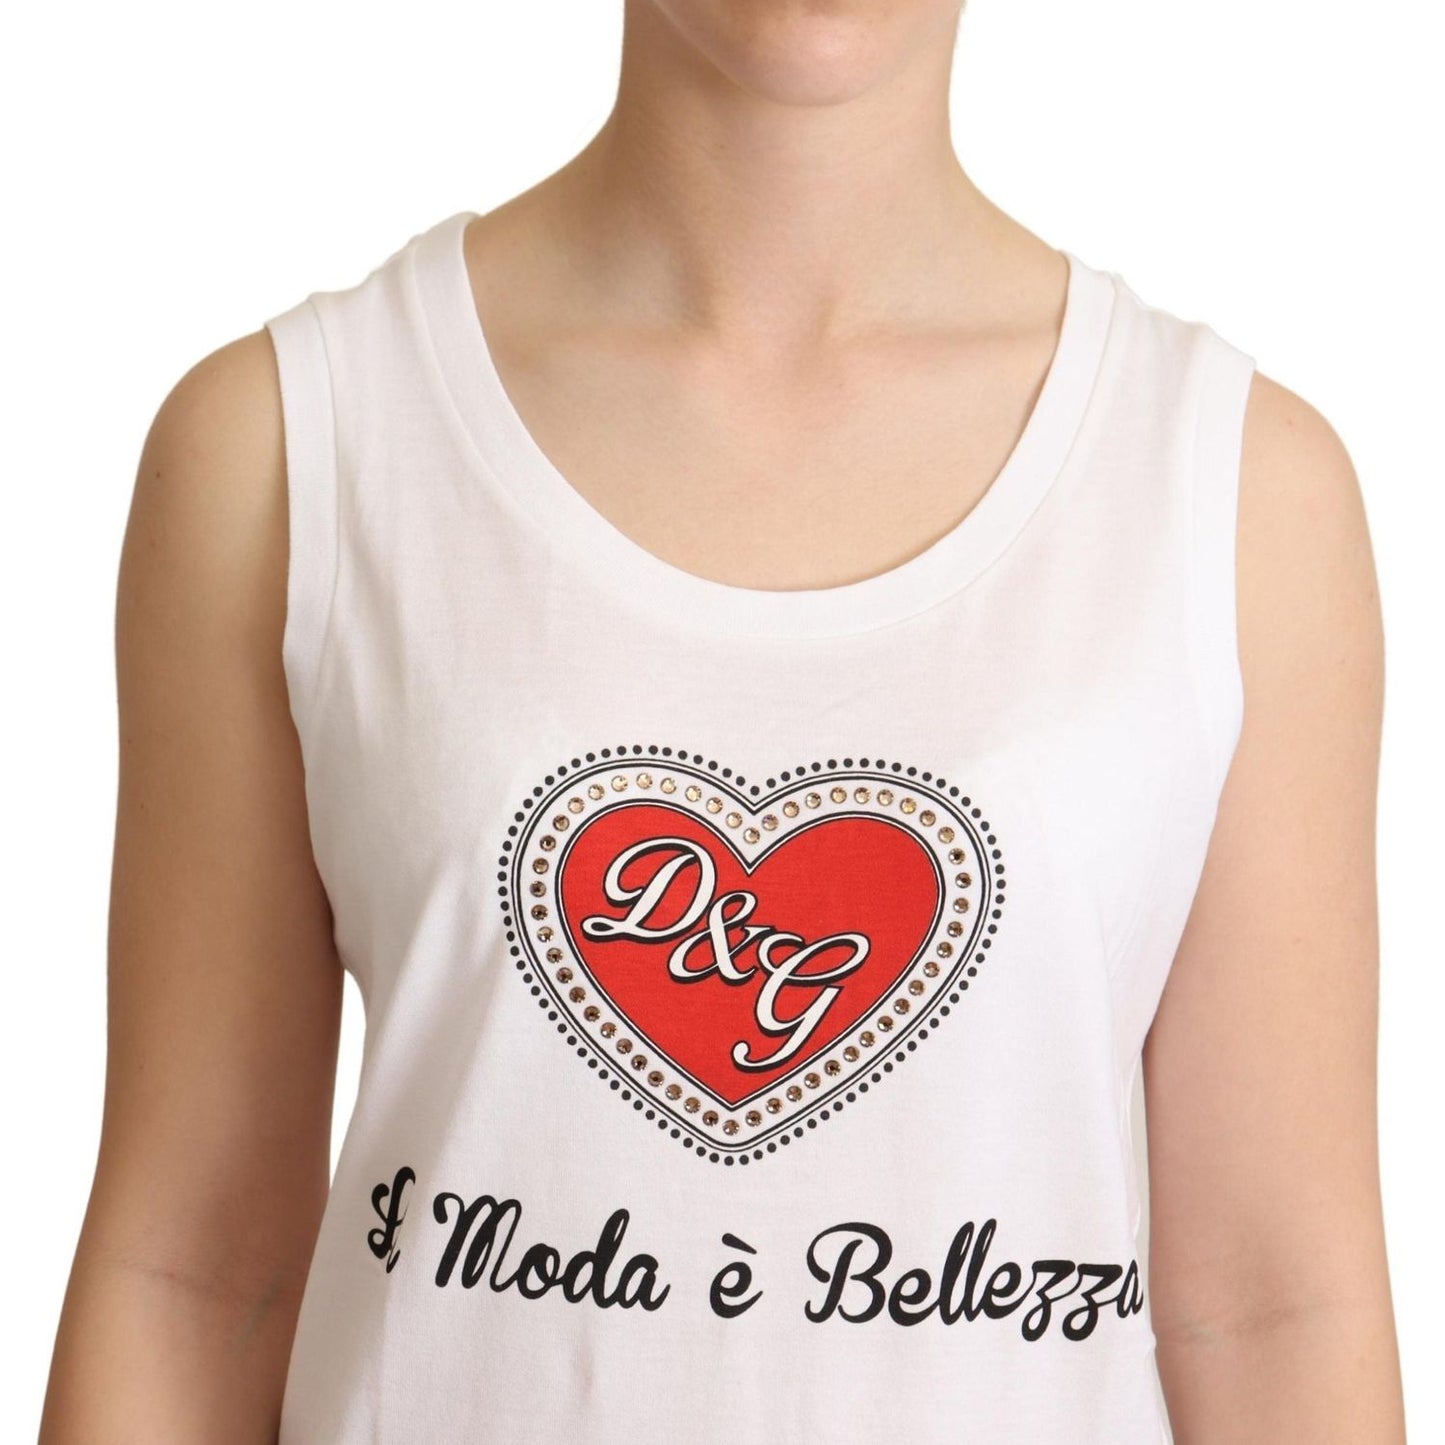 Dolce & GabbanaCrystal Embellished Heart White Sleeveless TeeMcRichard Designer Brands£219.00